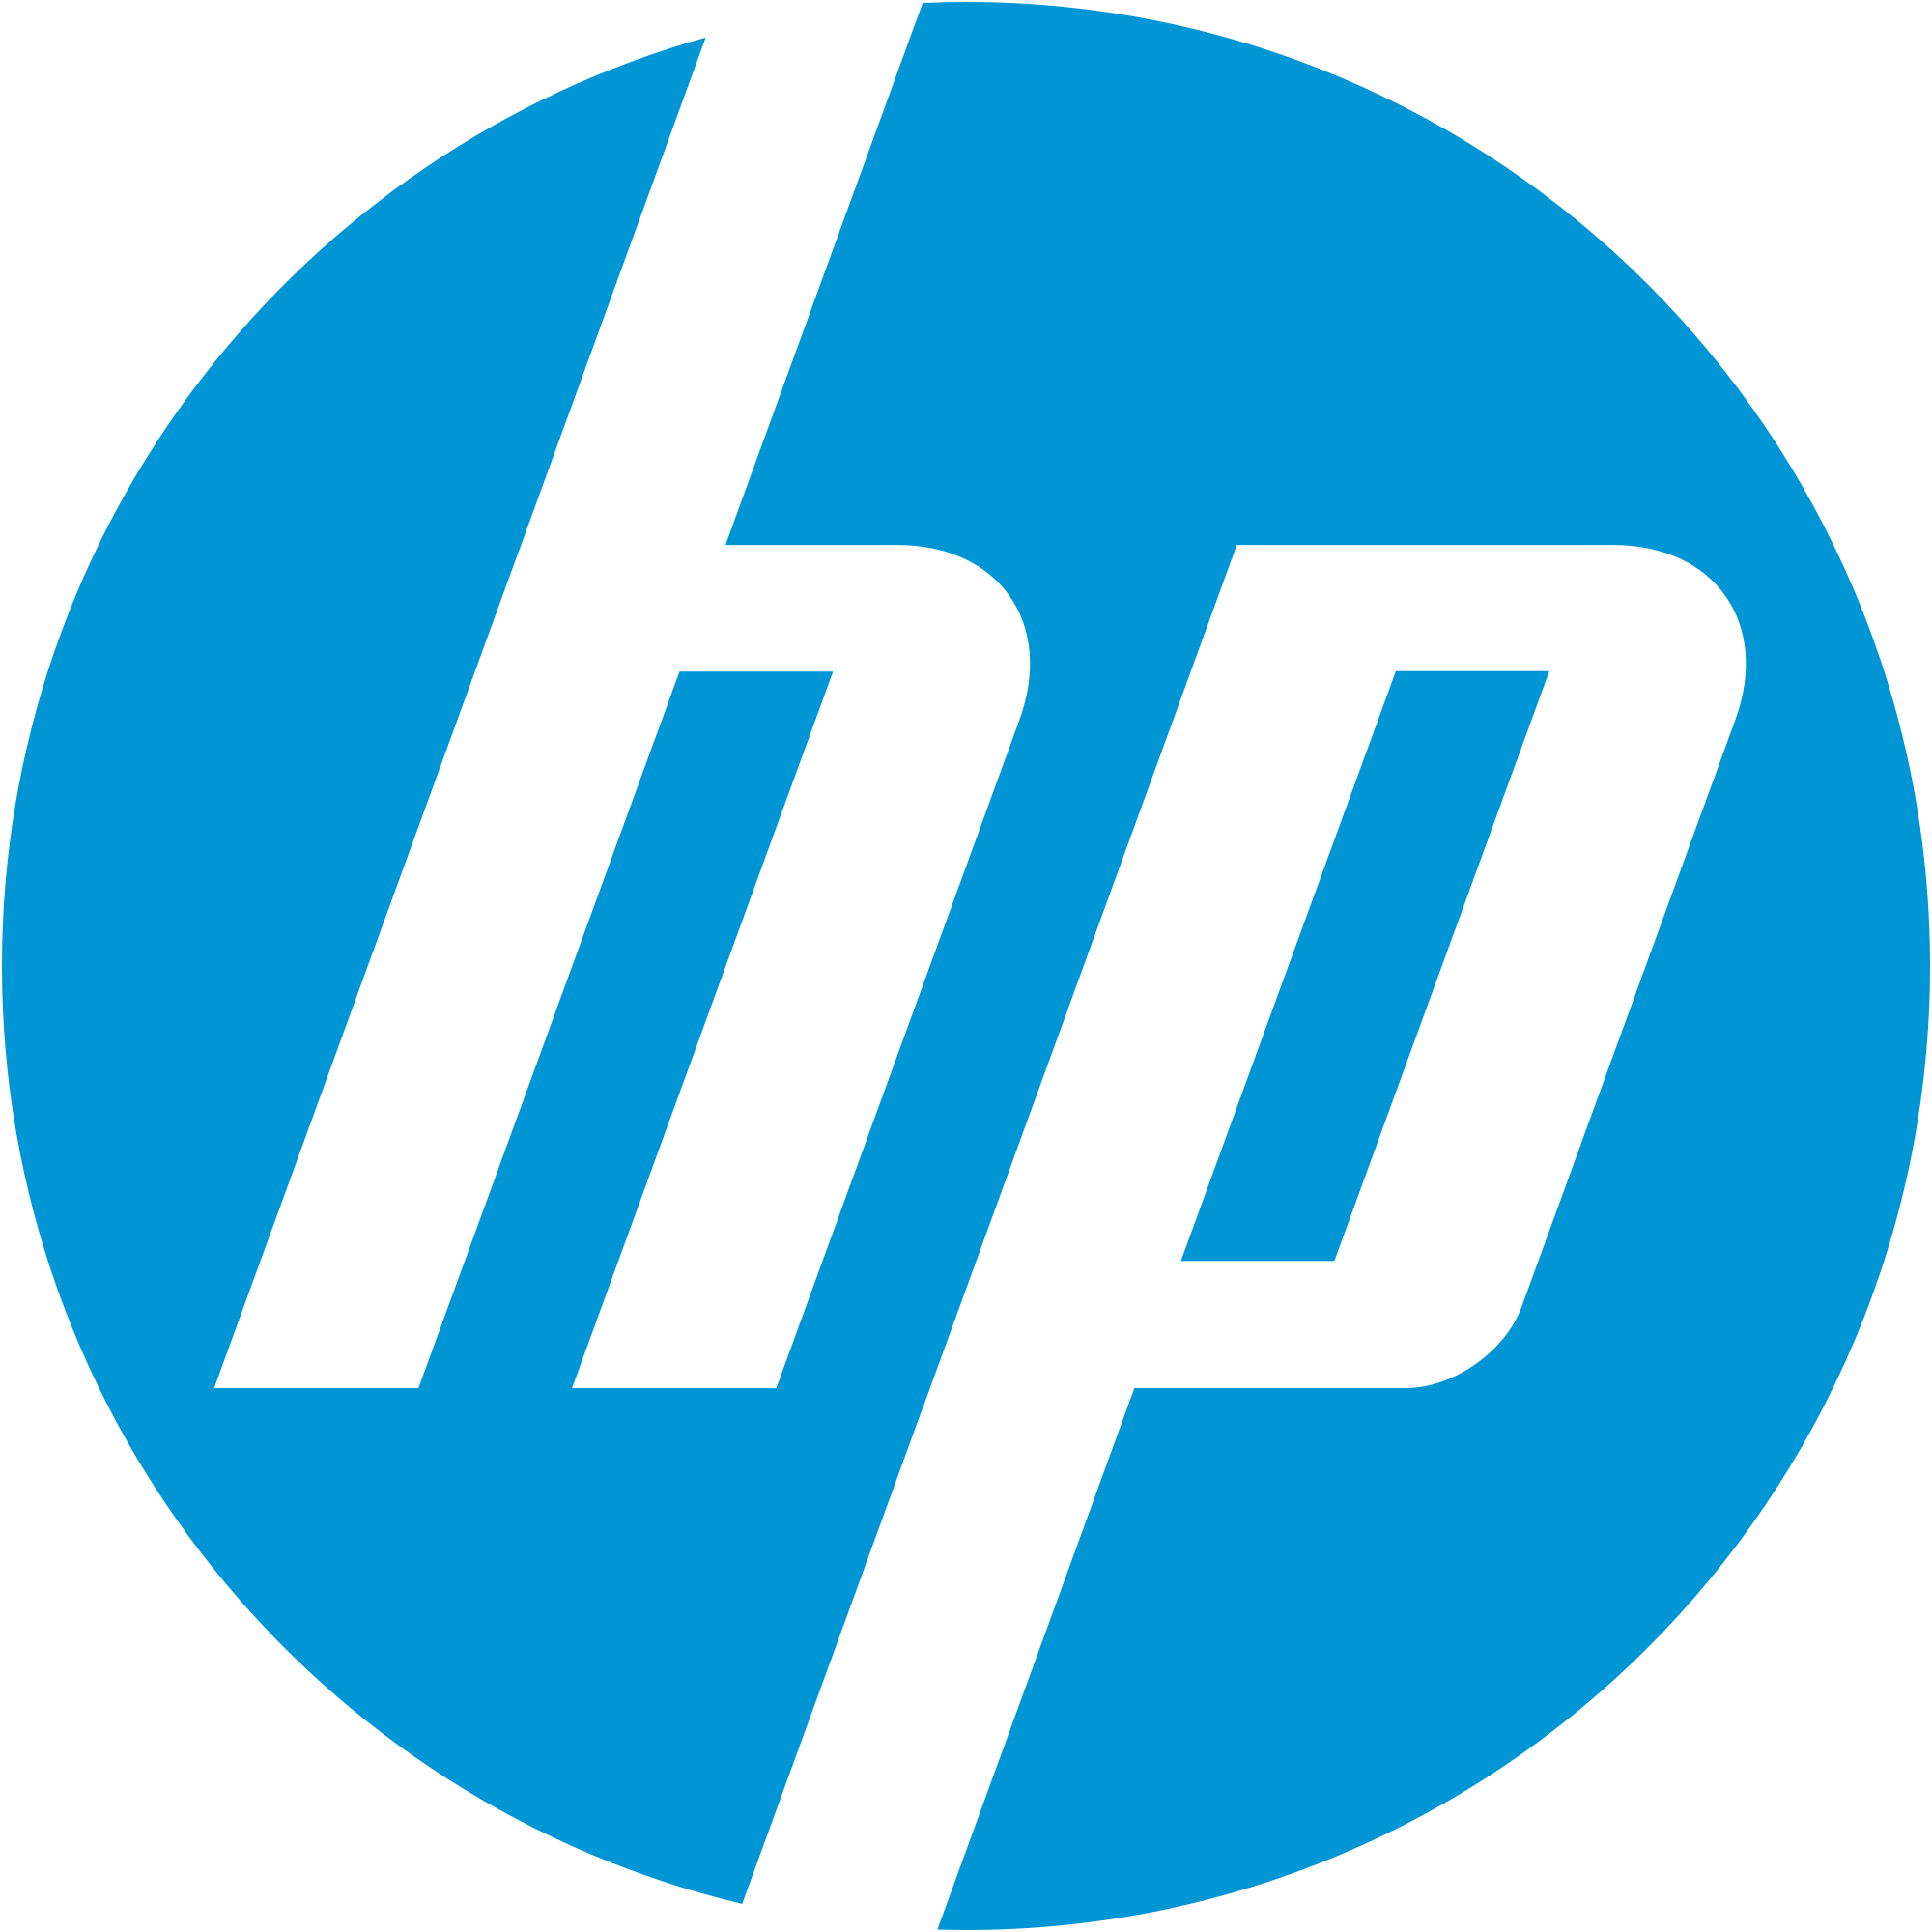 Máy tính để bàn-PC HP Desktop Pro MT (Ryzen 5 2400G-4GB-1TB-Dos) (5ZY79PA)